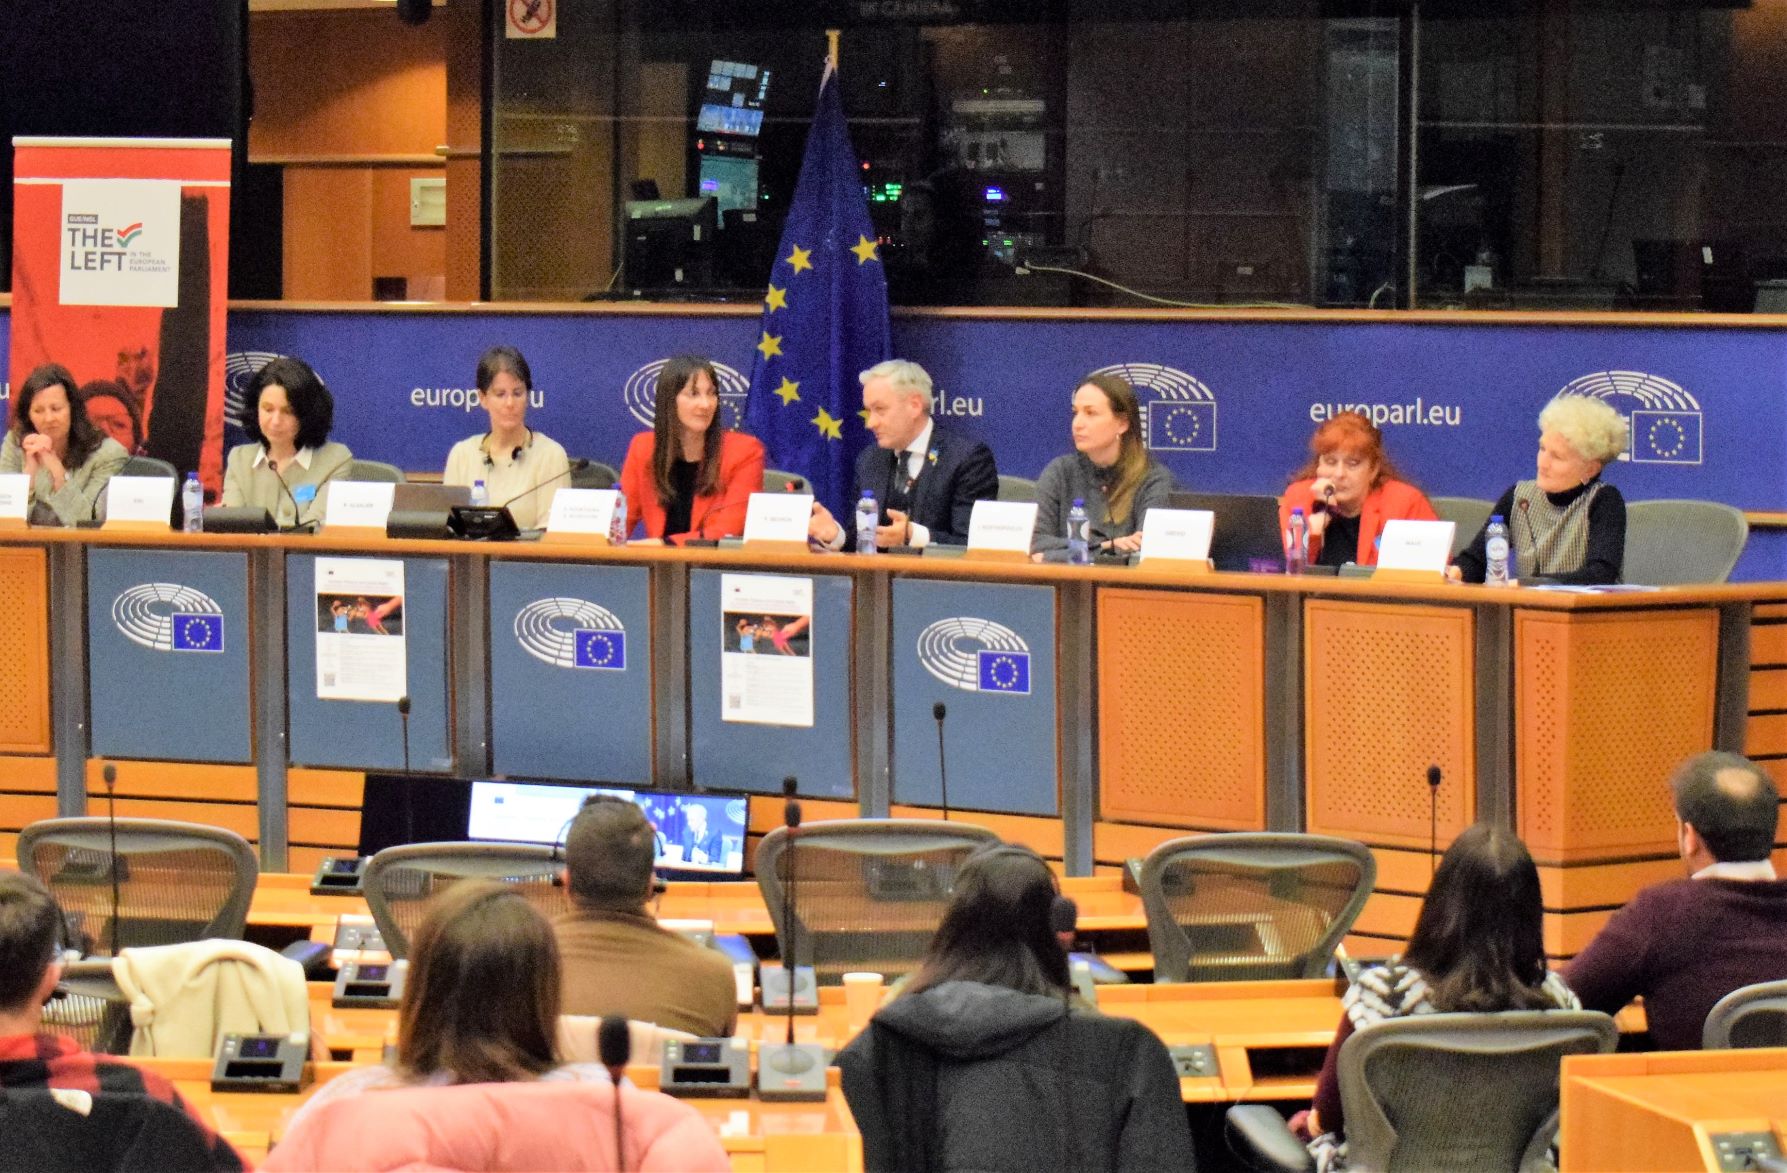 Με σημαντική απήχηση και επιτυχία η εκδήλωση της  Έλενας Κουντουρά στο Ευρωπαϊκό Κοινοβούλιο για την ενδοοικογενειακή βία και τα δικαιώματα επιμέλειας